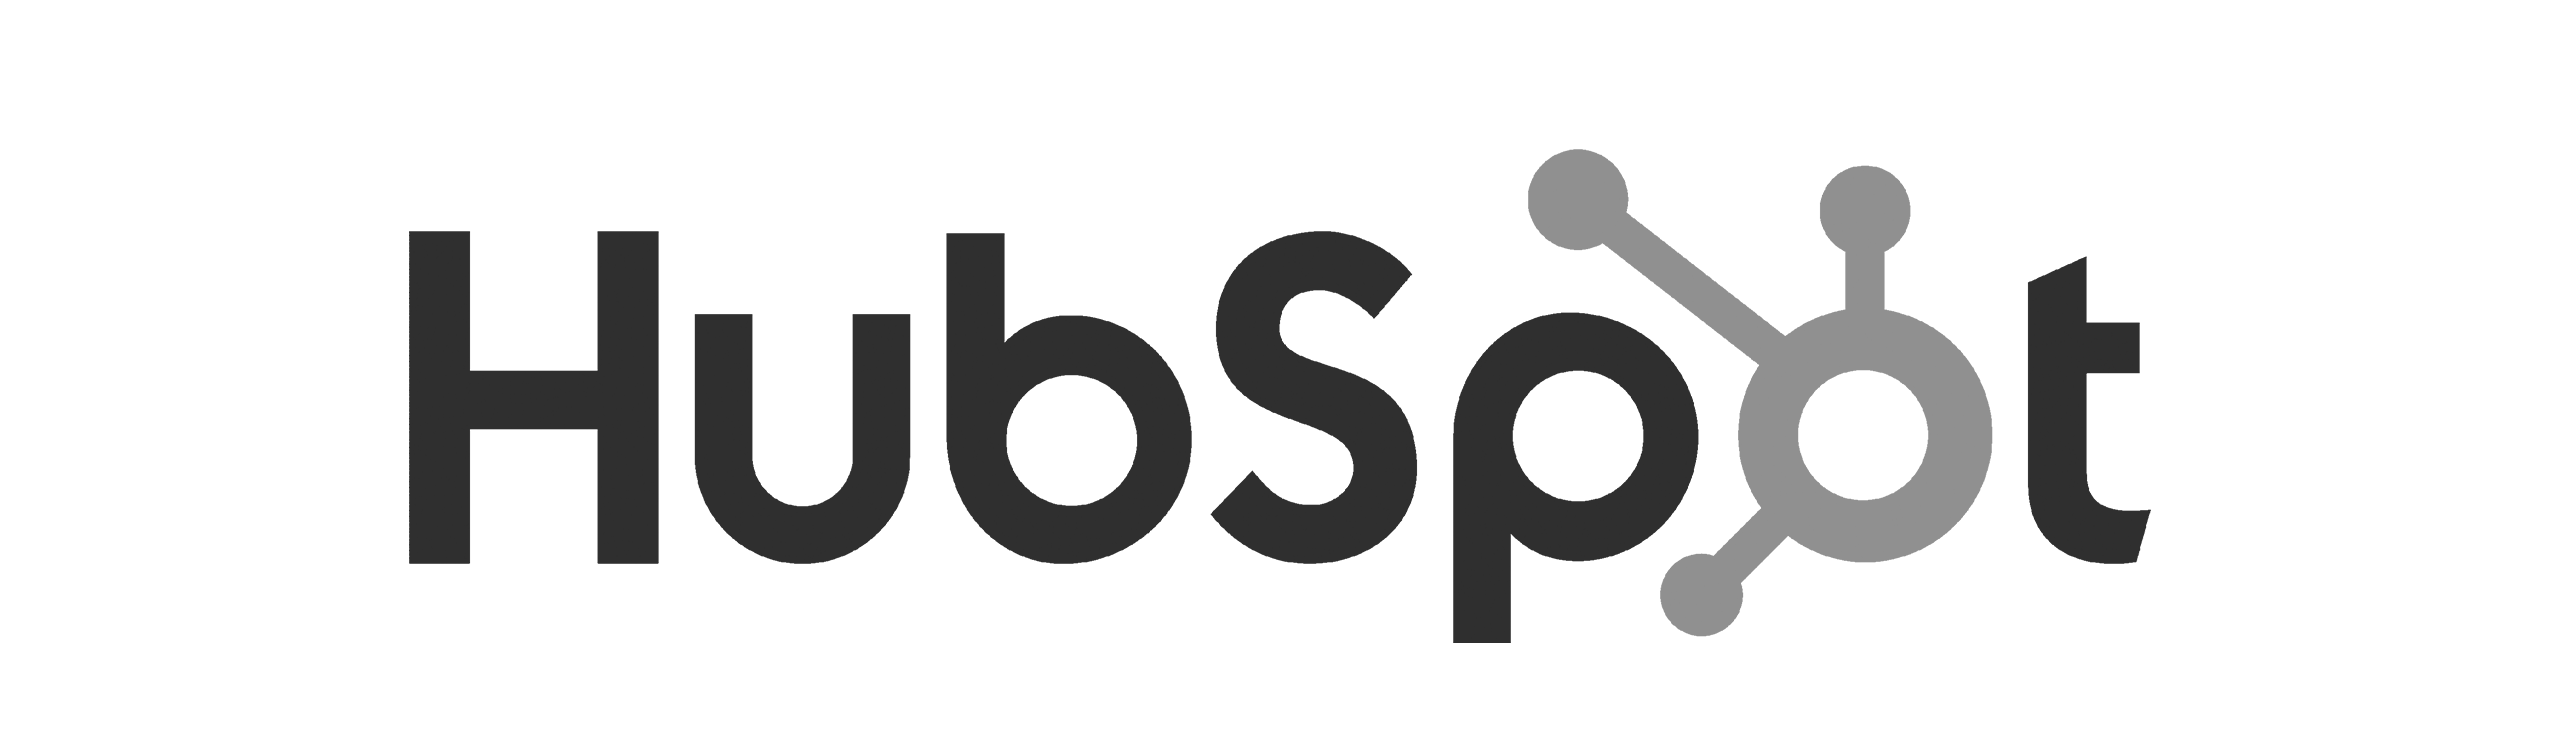 hubspot-logo-bw